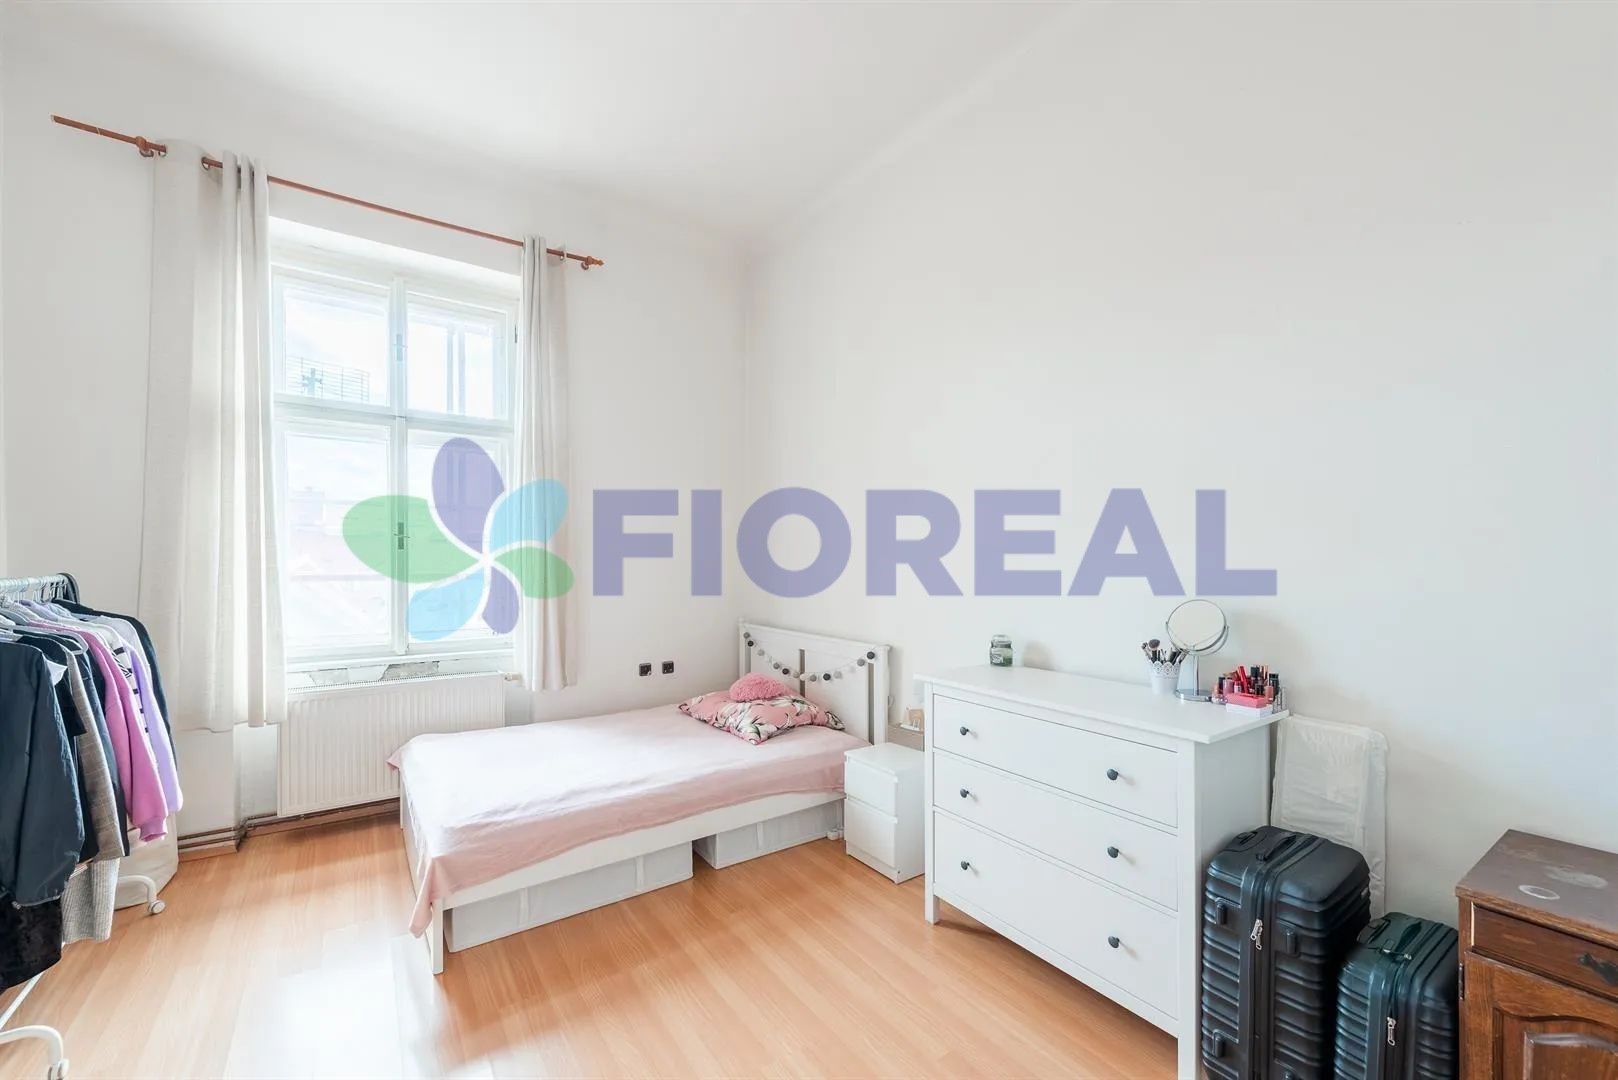 pokoj / ložnice s přirozené světlo, radiátor, a dřevěná podlaha